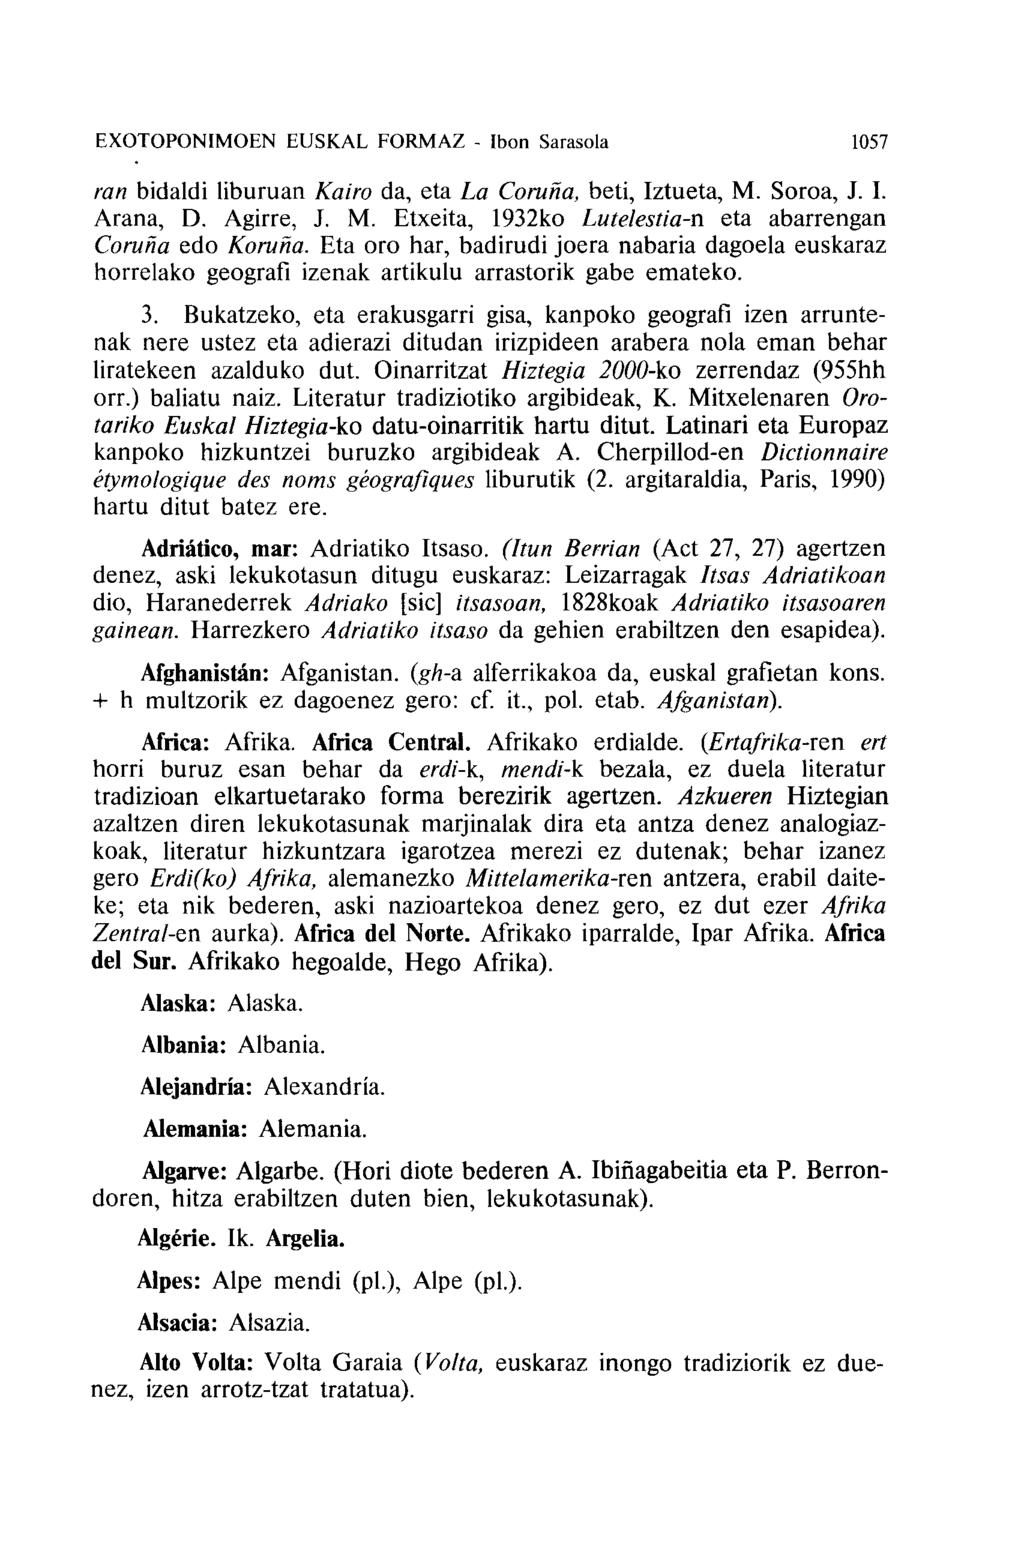 EXOTOPONIMOEN EUSKAL FORMAZ - Ibon Sarasola 1057 ran bidaldi liburuan Kai'O da, eta La Corona, beti, Iztueta, M. Soroa, J. I. Arana, D. Agirre, J. M. Etxeita, 1932ko Lutelestia-n eta abarrengan Coruna edo Korona.